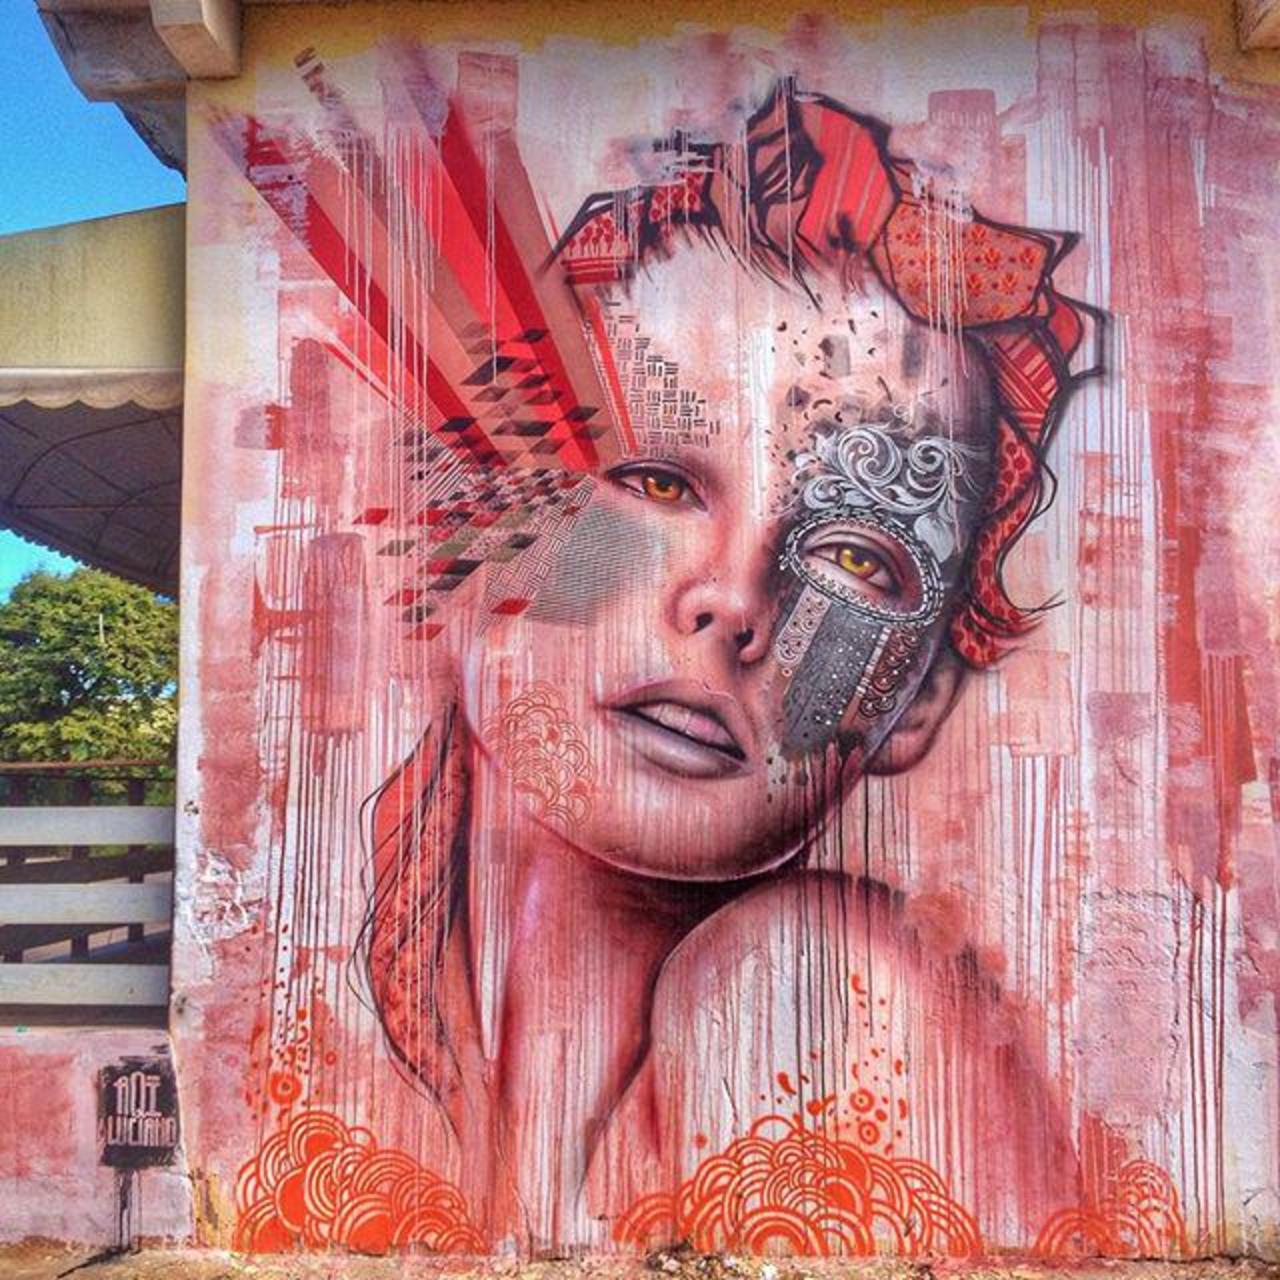 RT @cakozlem76: Aqi Luciano #Brazil #streetart #urbanart #graffiti http://t.co/7qNKoTDhPW